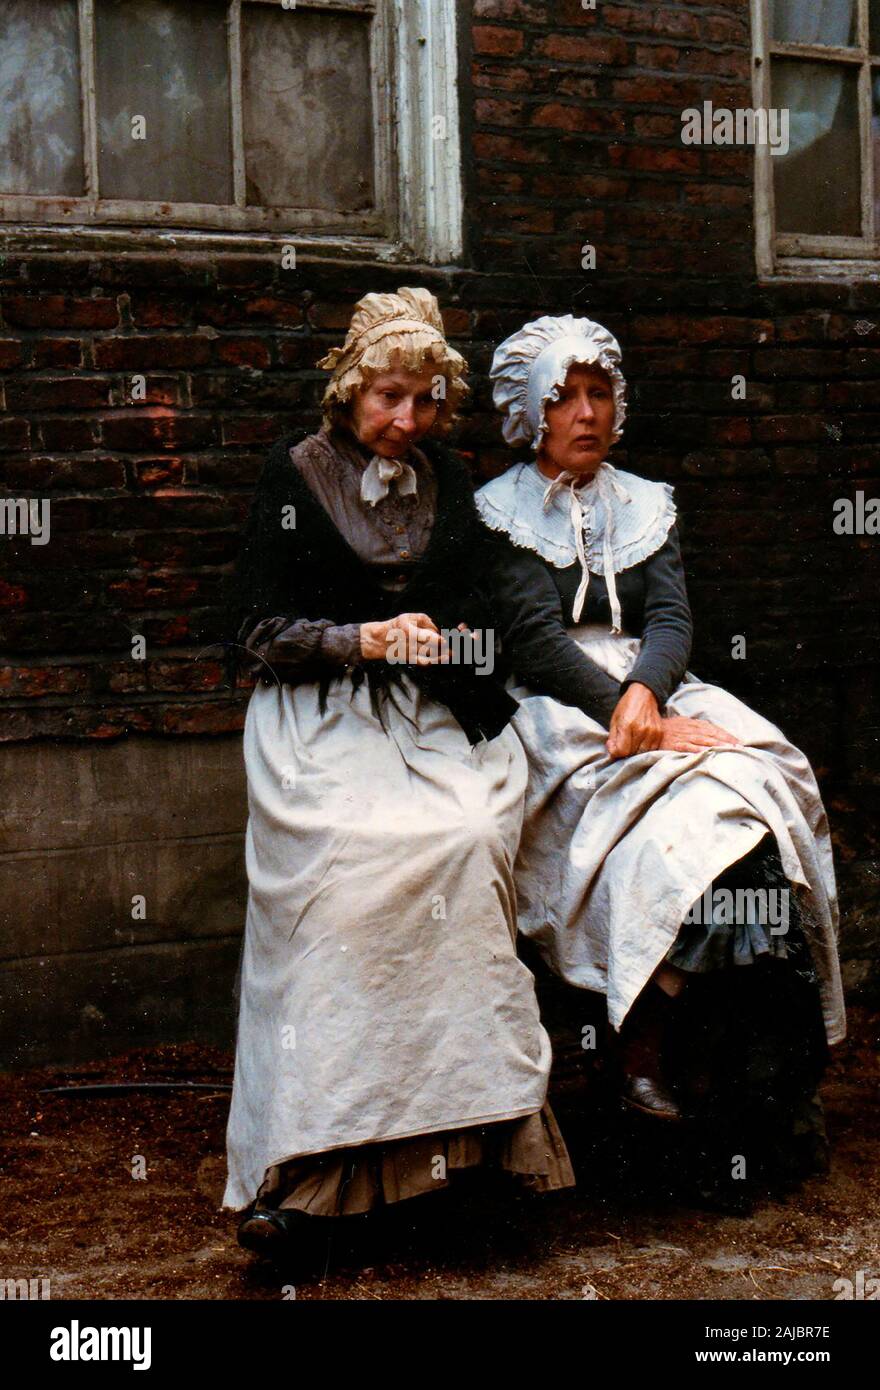 1986 - Hinter den Kulissen Bild in der Verfilmung der BBC-Serie David Copperfield - In whitby, North Yorkshire - Juni 1986 (Extras für Ihre Szene warten) Stockfoto